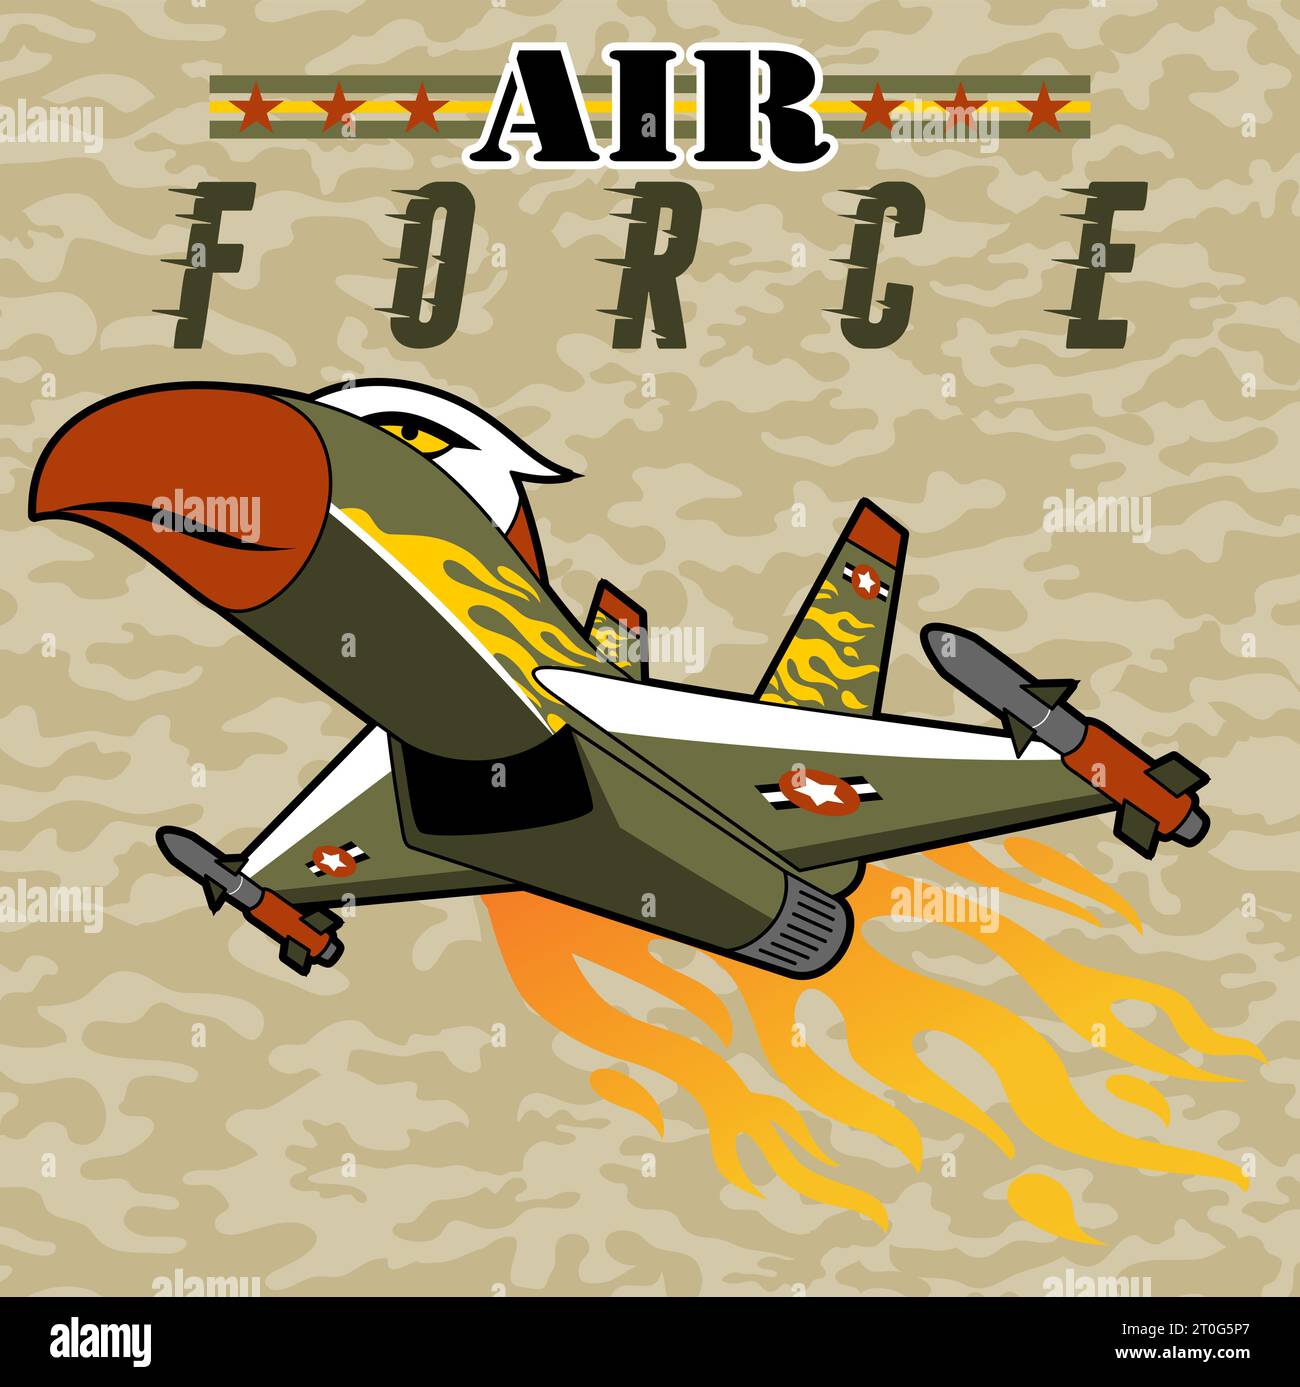 Kampfflugzeug in Adler Features auf Tarnhintergrund, Vektor-Zeichentrickillustration Stock Vektor